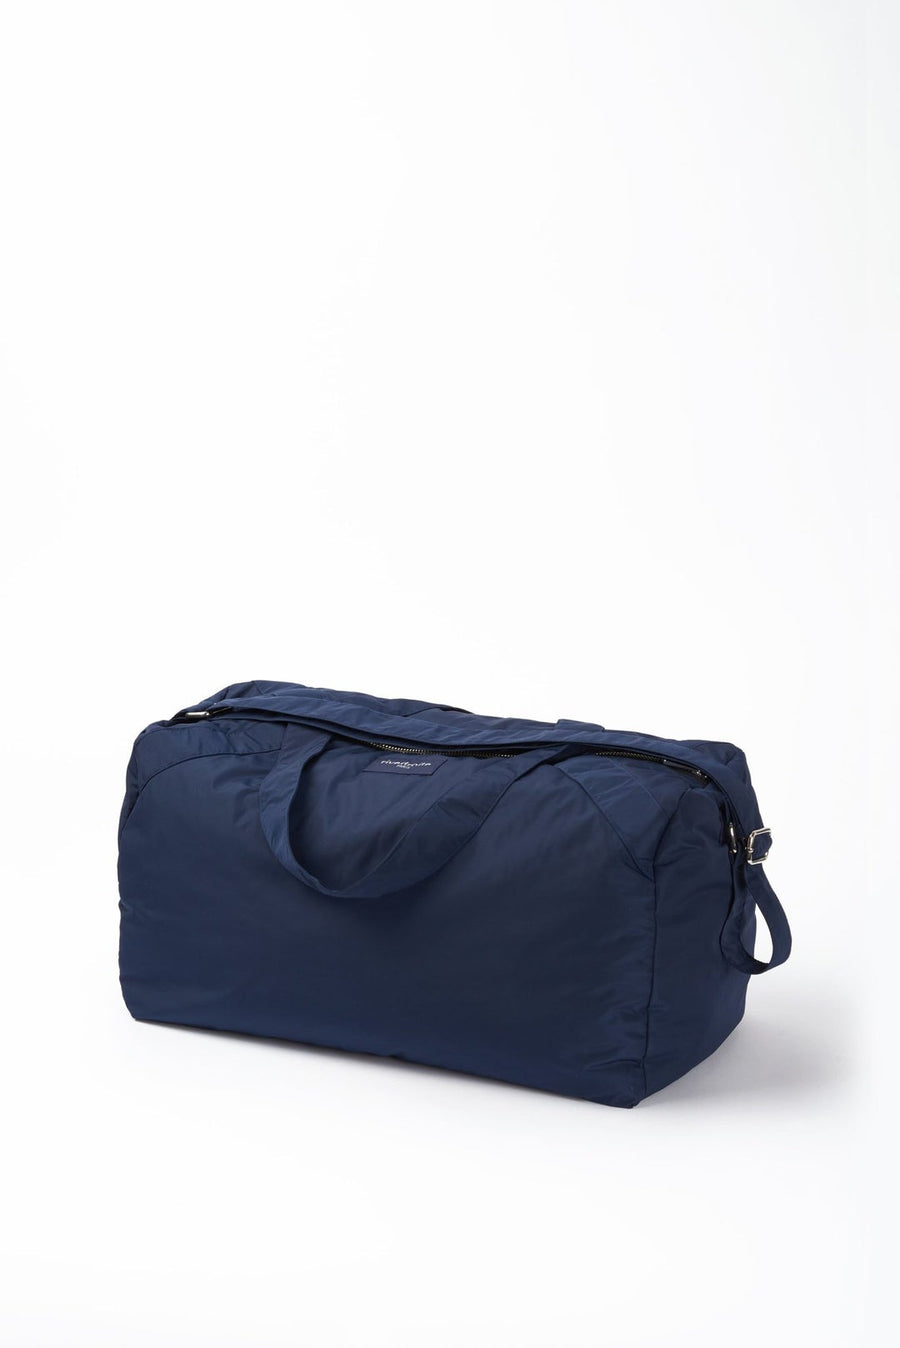 Ramus - The Weekender Bag Navy Blue